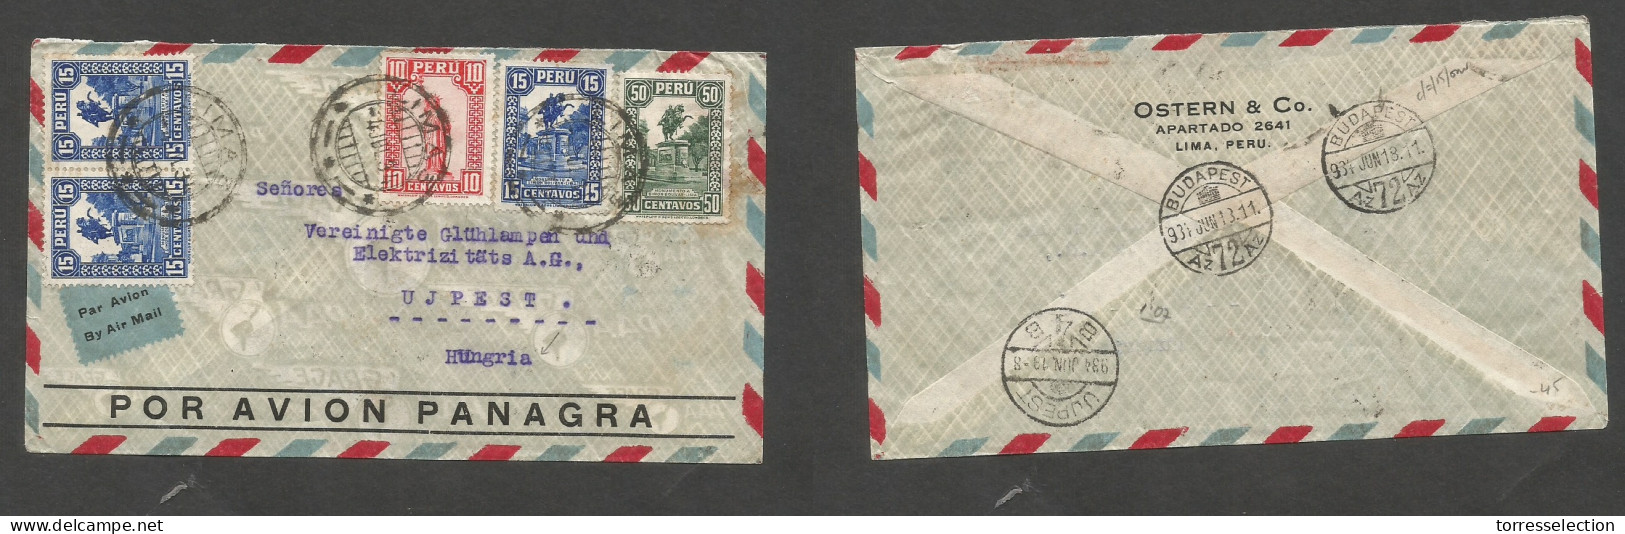 PERU. 1934 (4 June) Lima - Hungary, Ujpest (13 June) Air Multifkd Env, At 1,05 Ps Rate. VF + Air Label. SALE. - Perú